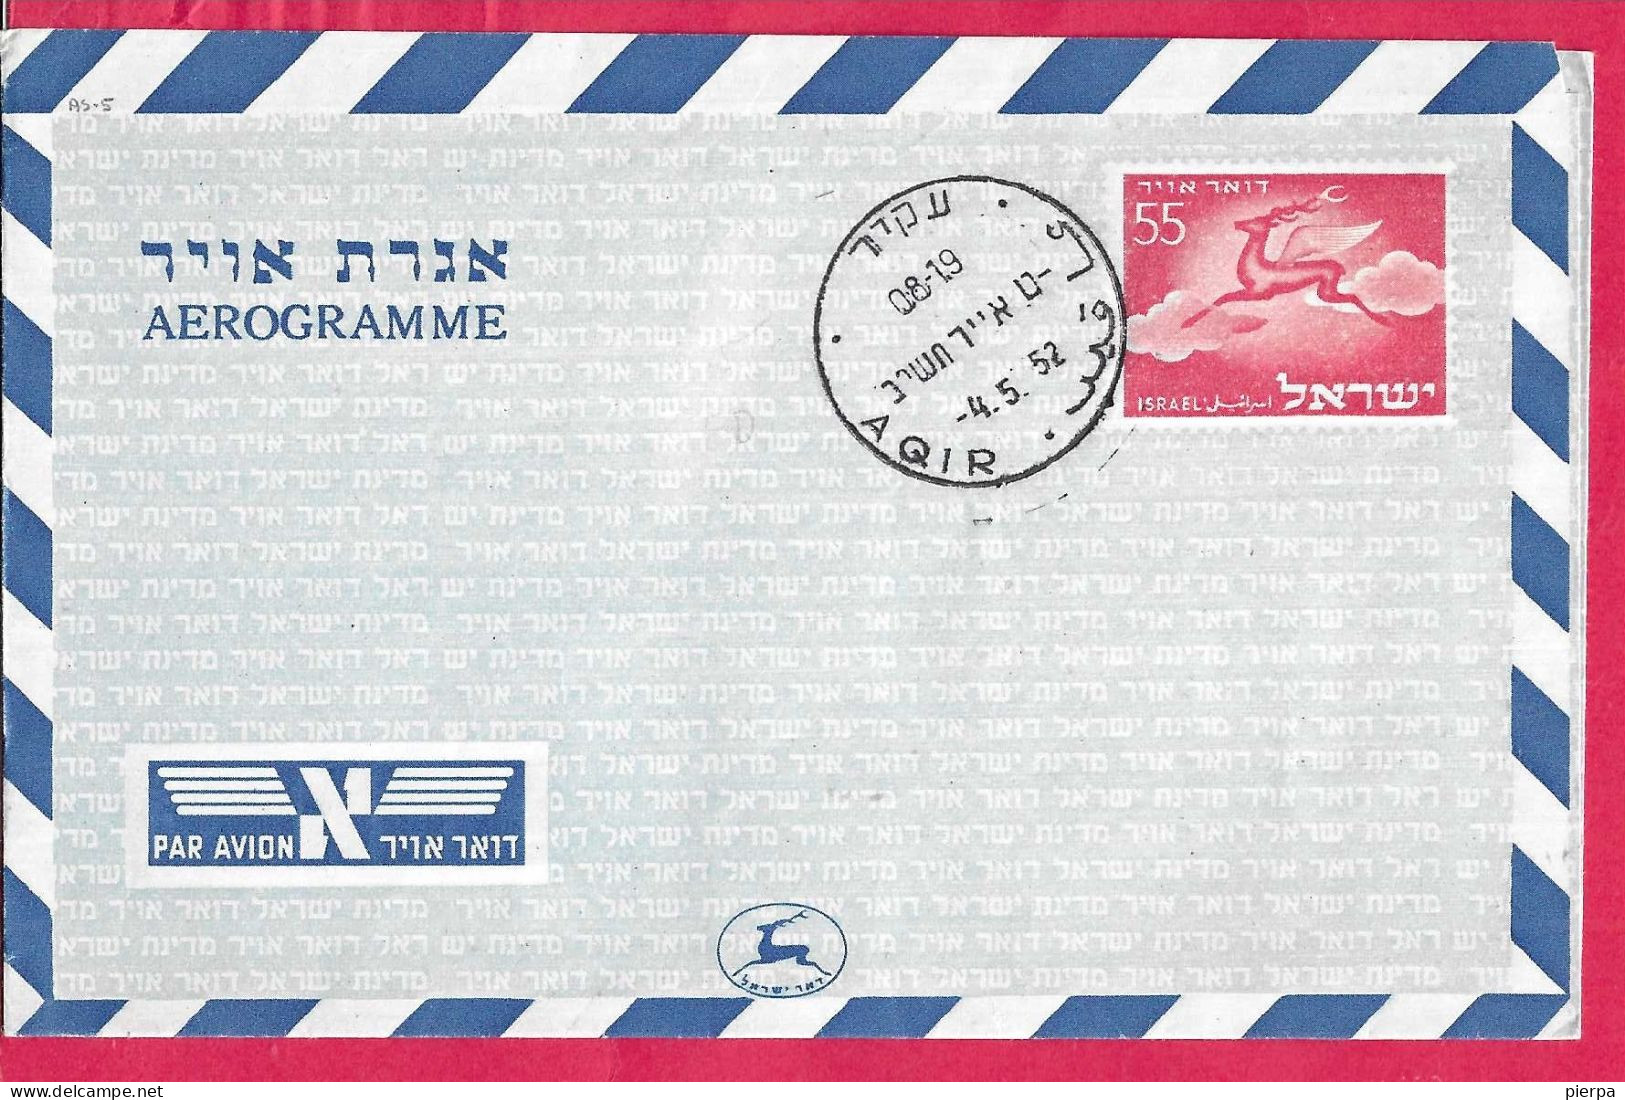 ISRAELE - INTERO AEROGRAMMA 55 - ANNULLO  "AQIR *4.5.52* - Airmail